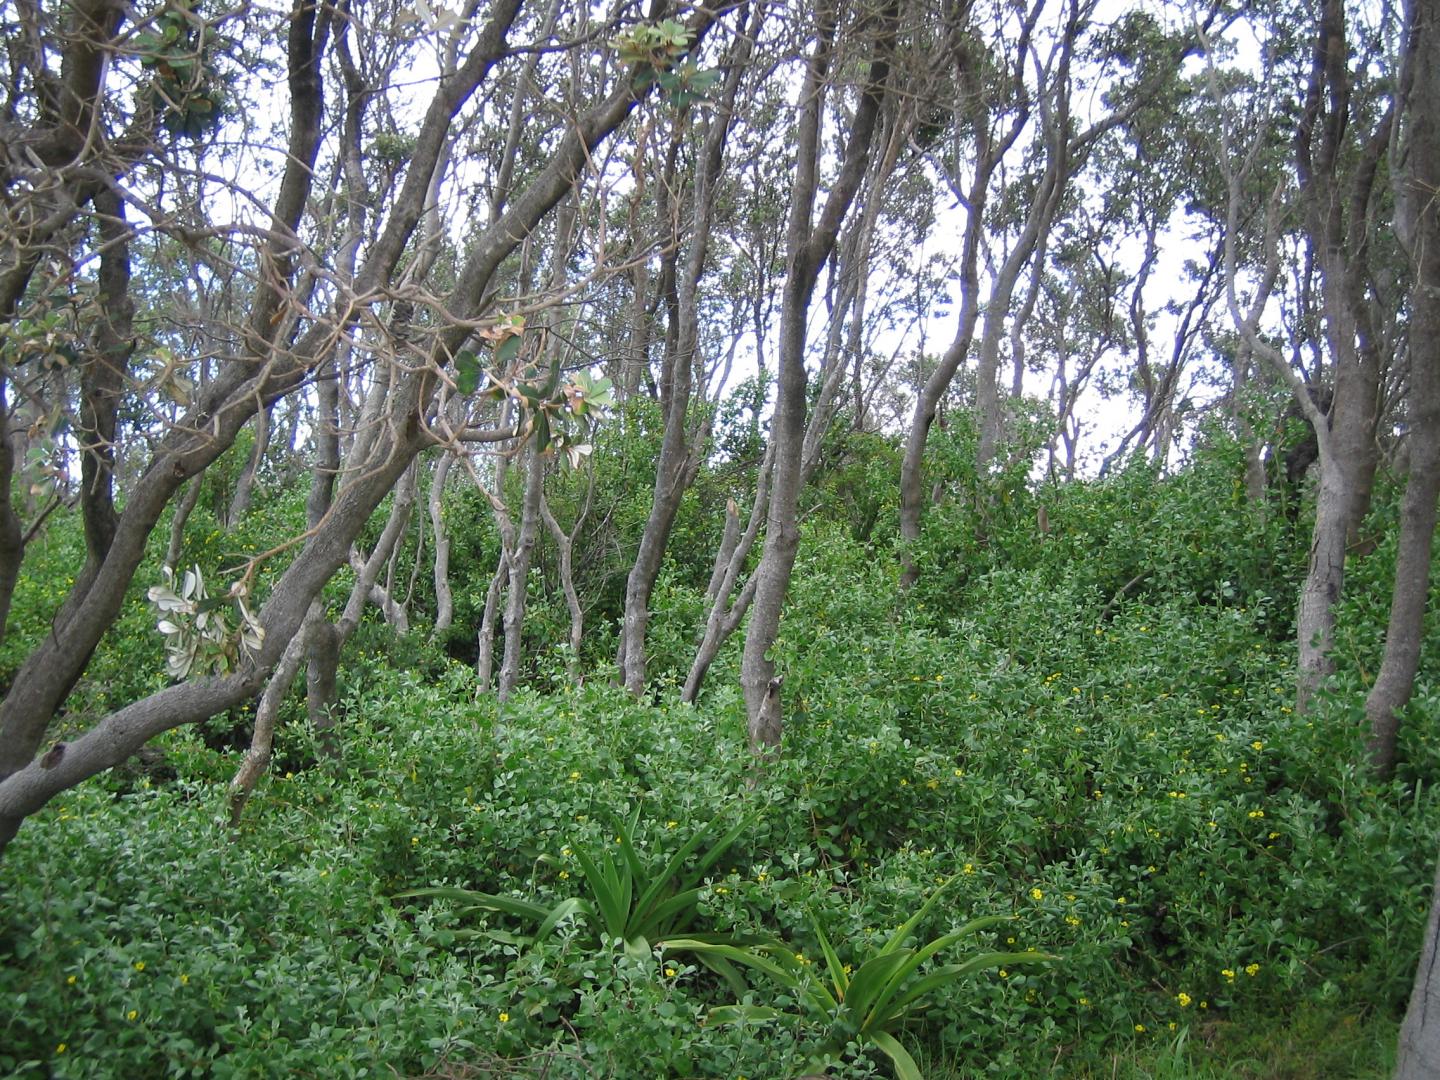 Bitou Bush Invading Banksia Woodland